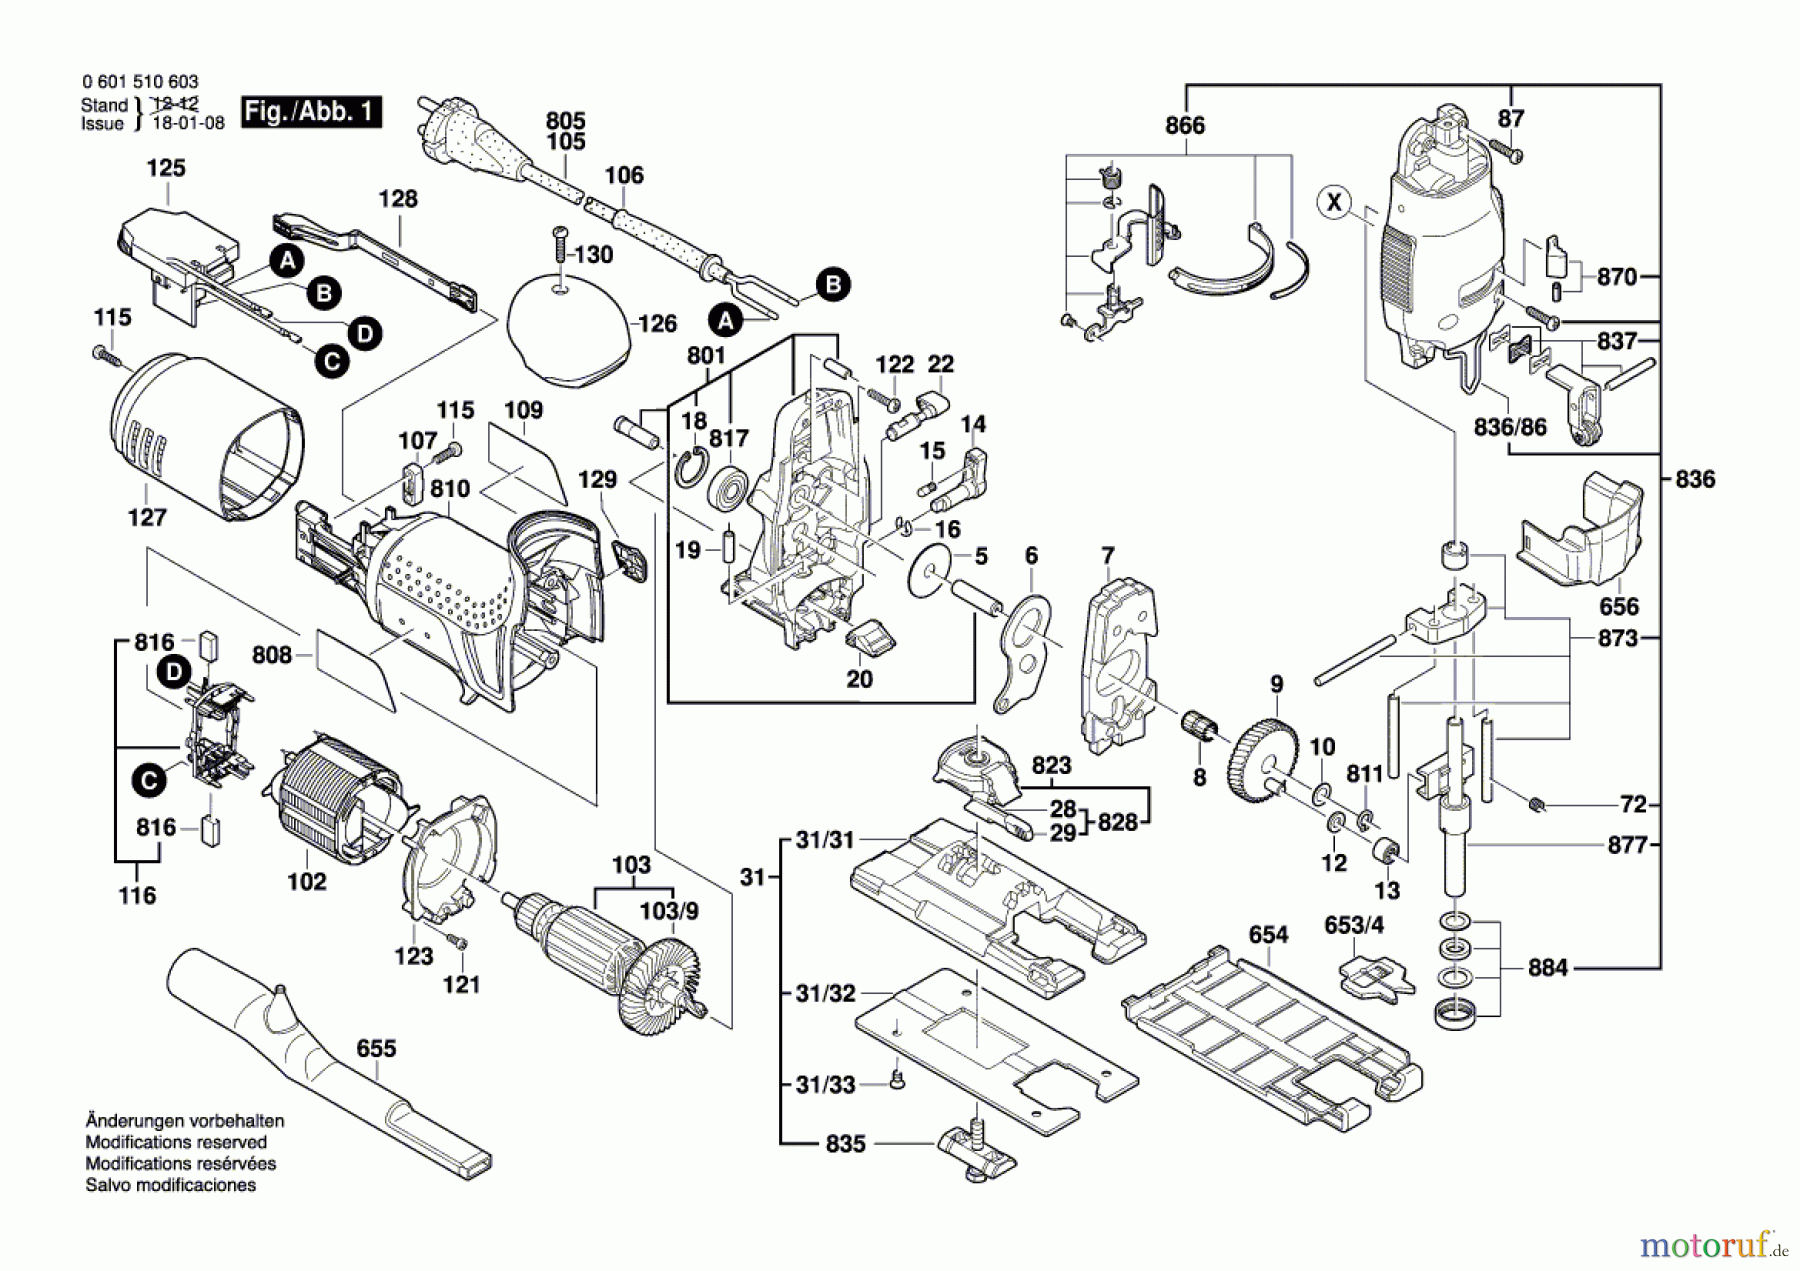  Bosch Werkzeug Stichsäge STP 120 S Seite 1